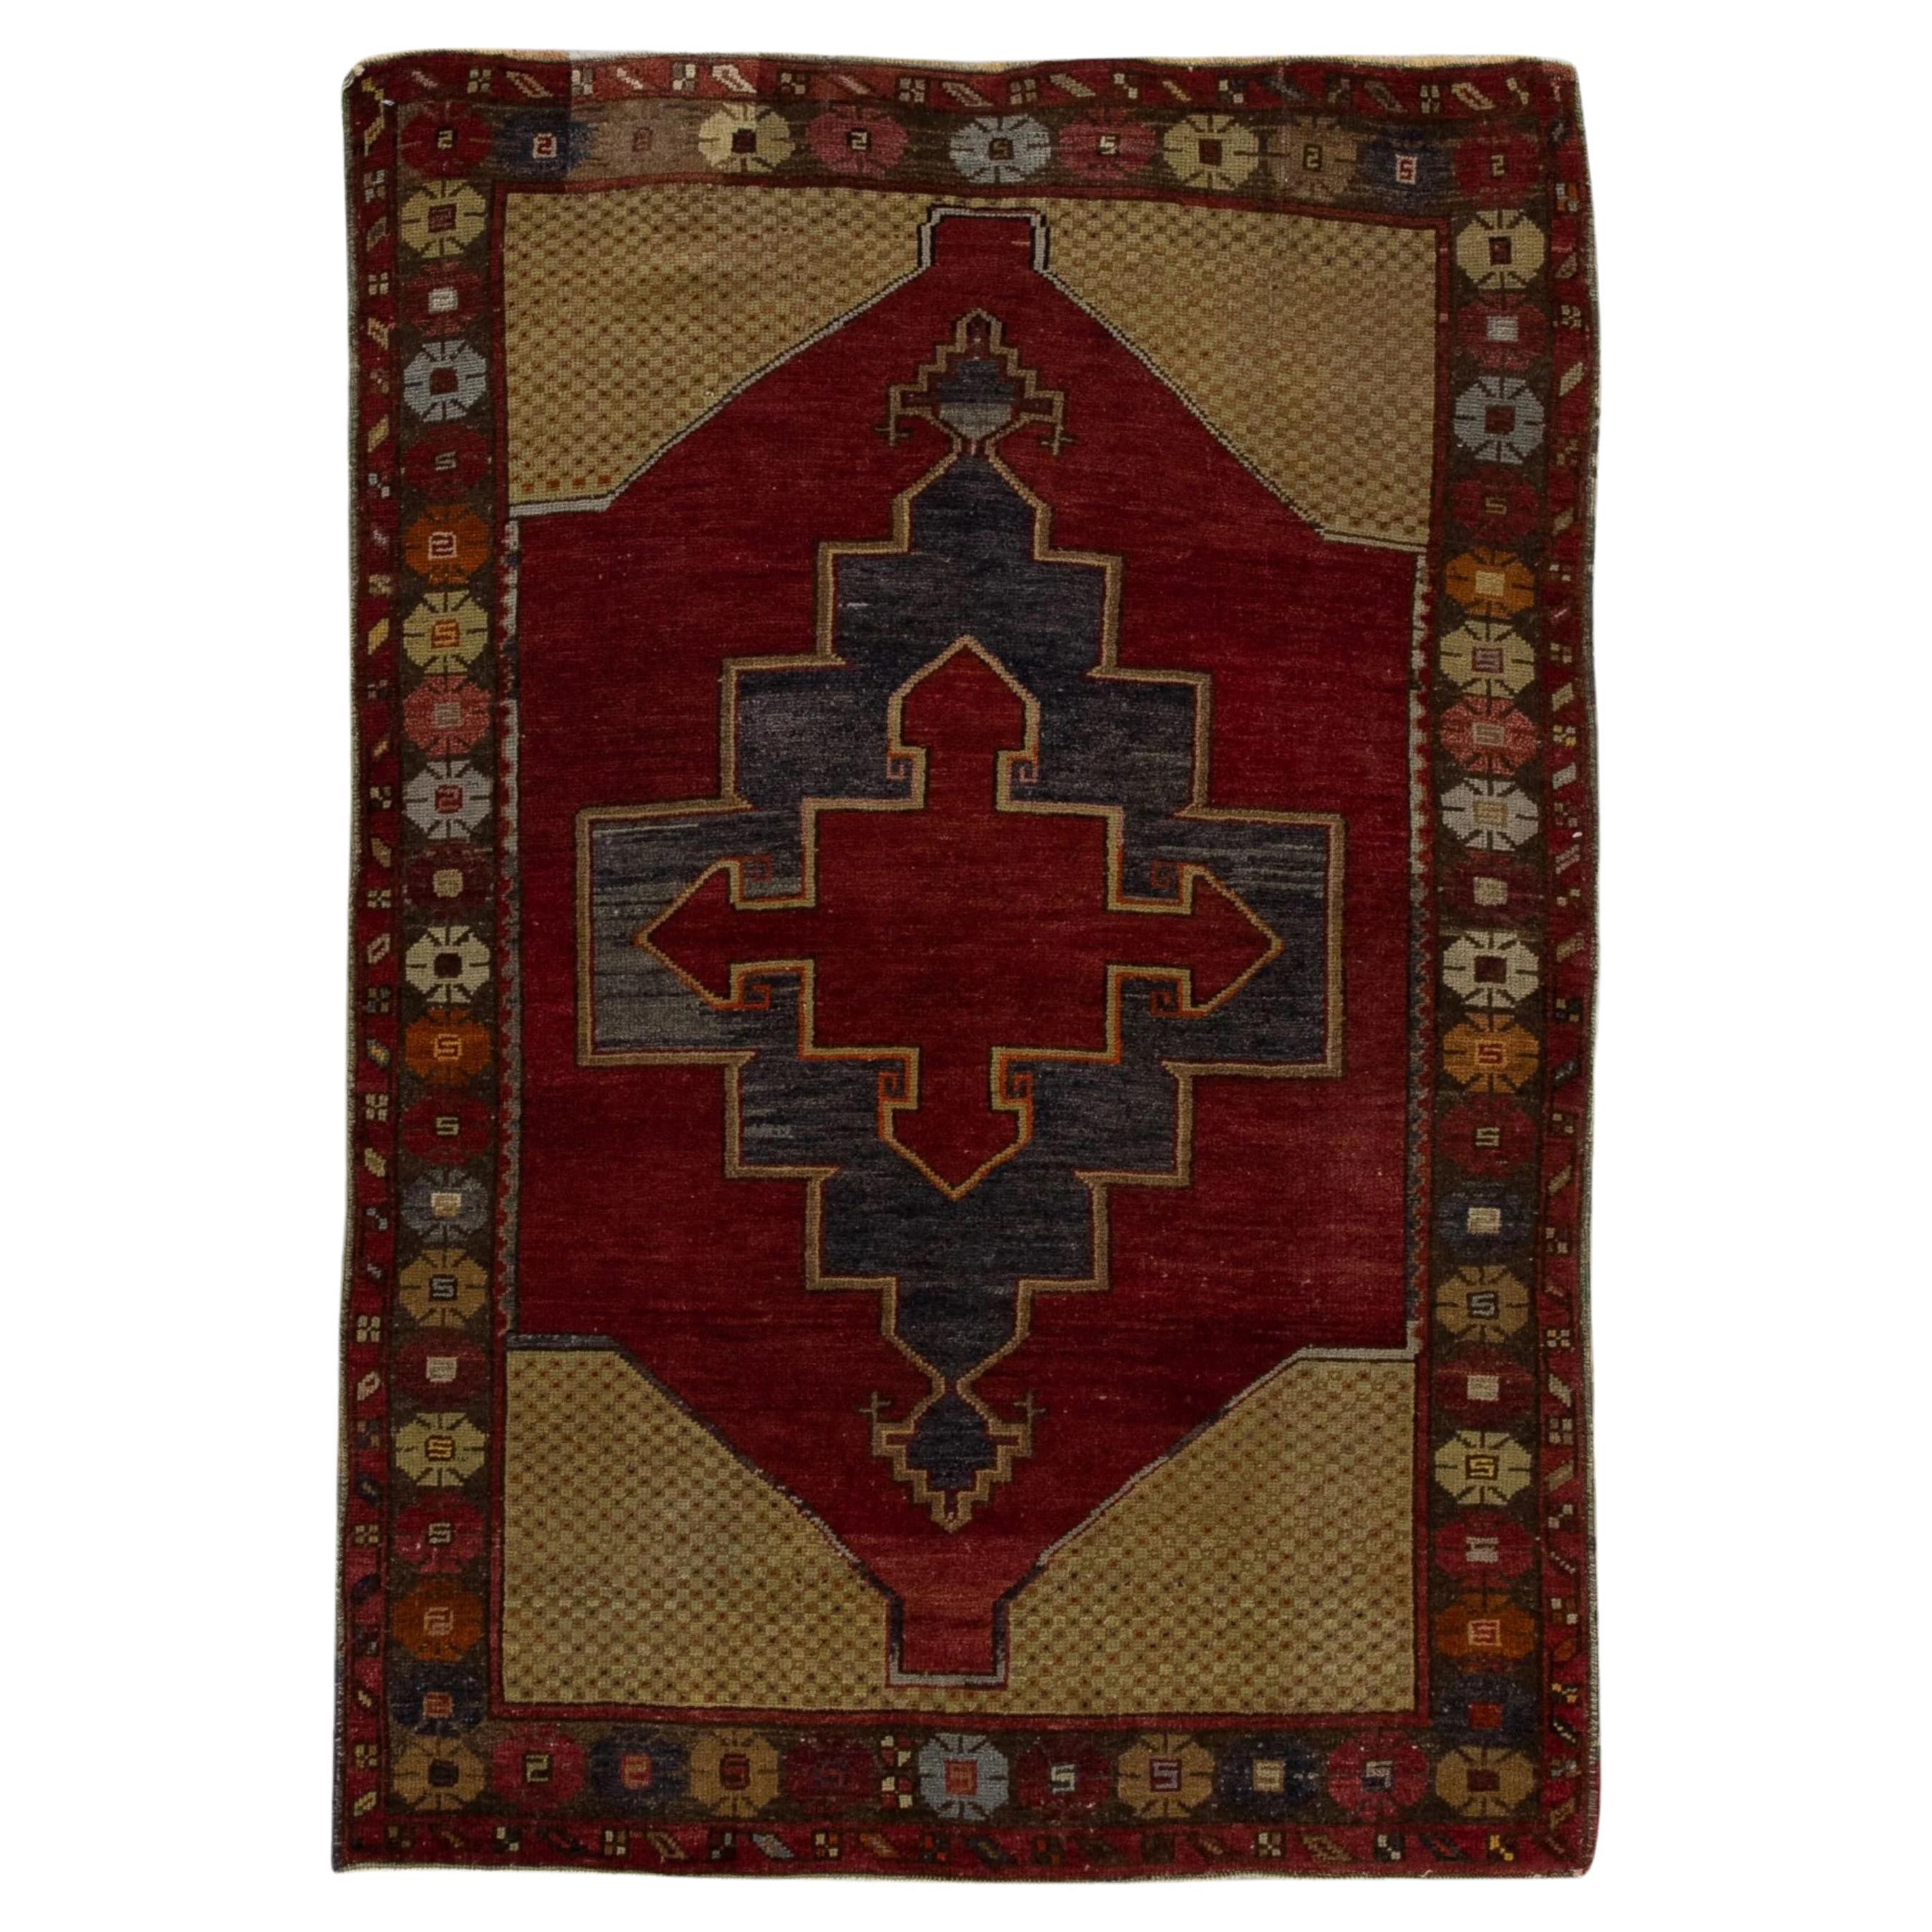 Roter handgewebter türkischer Oushak-Teppich aus Wolle im Vintage-Stil 3'8" x 5'1"